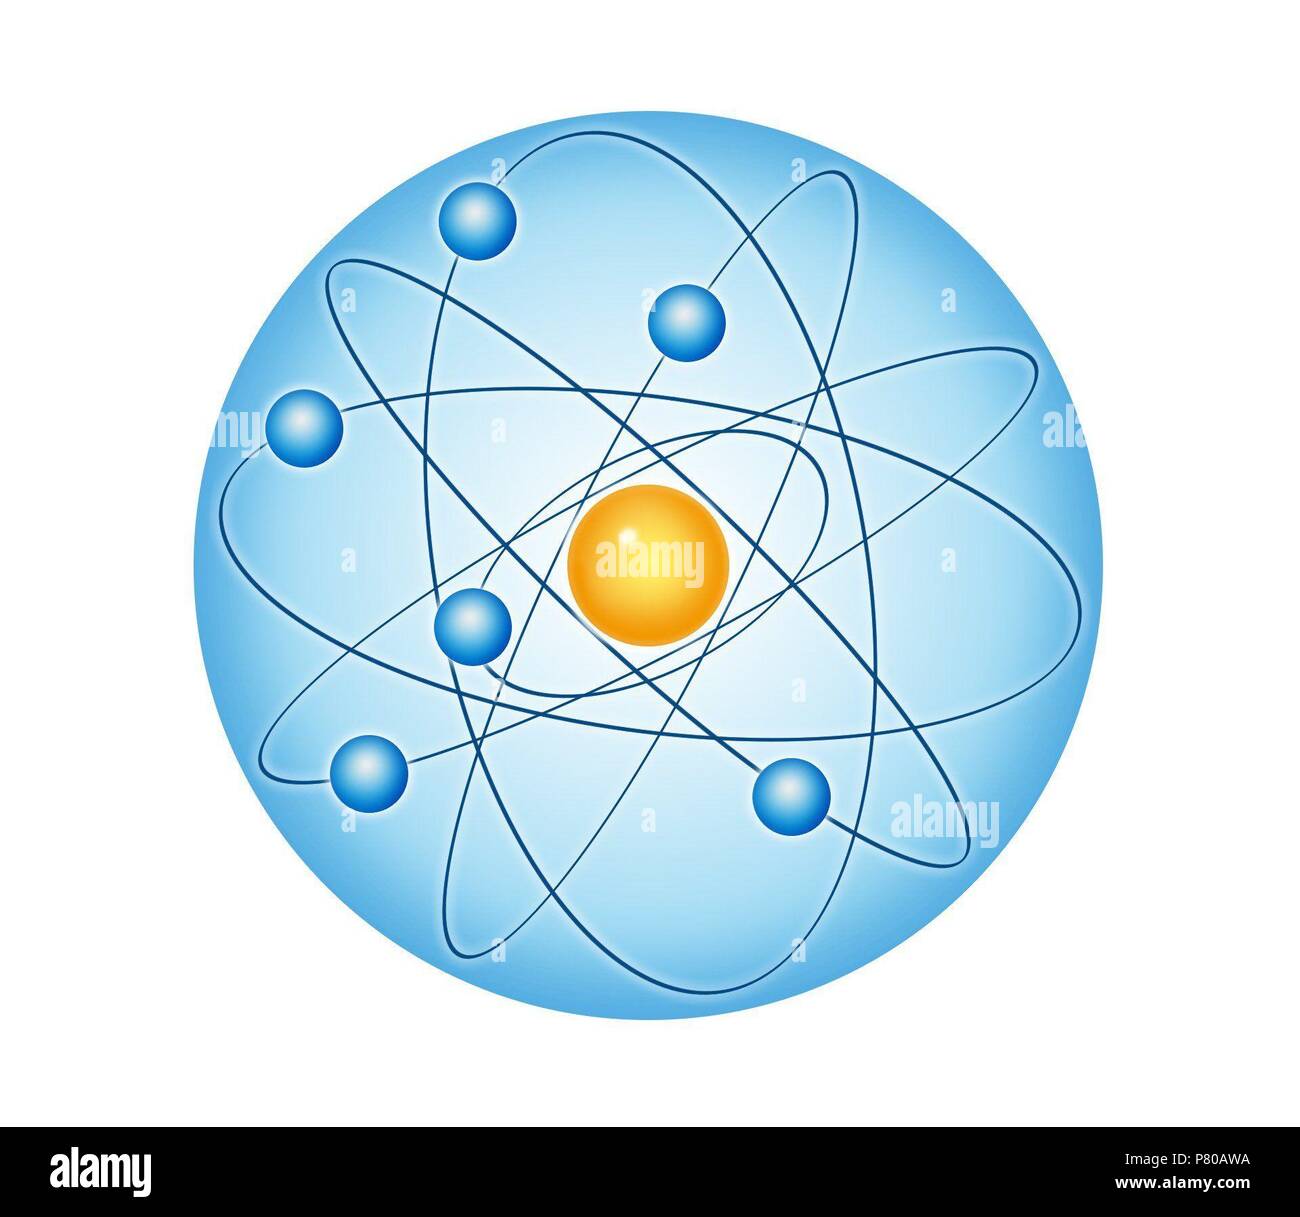 Modelo atómico rutherford fotografías e imágenes de alta resolución - Alamy